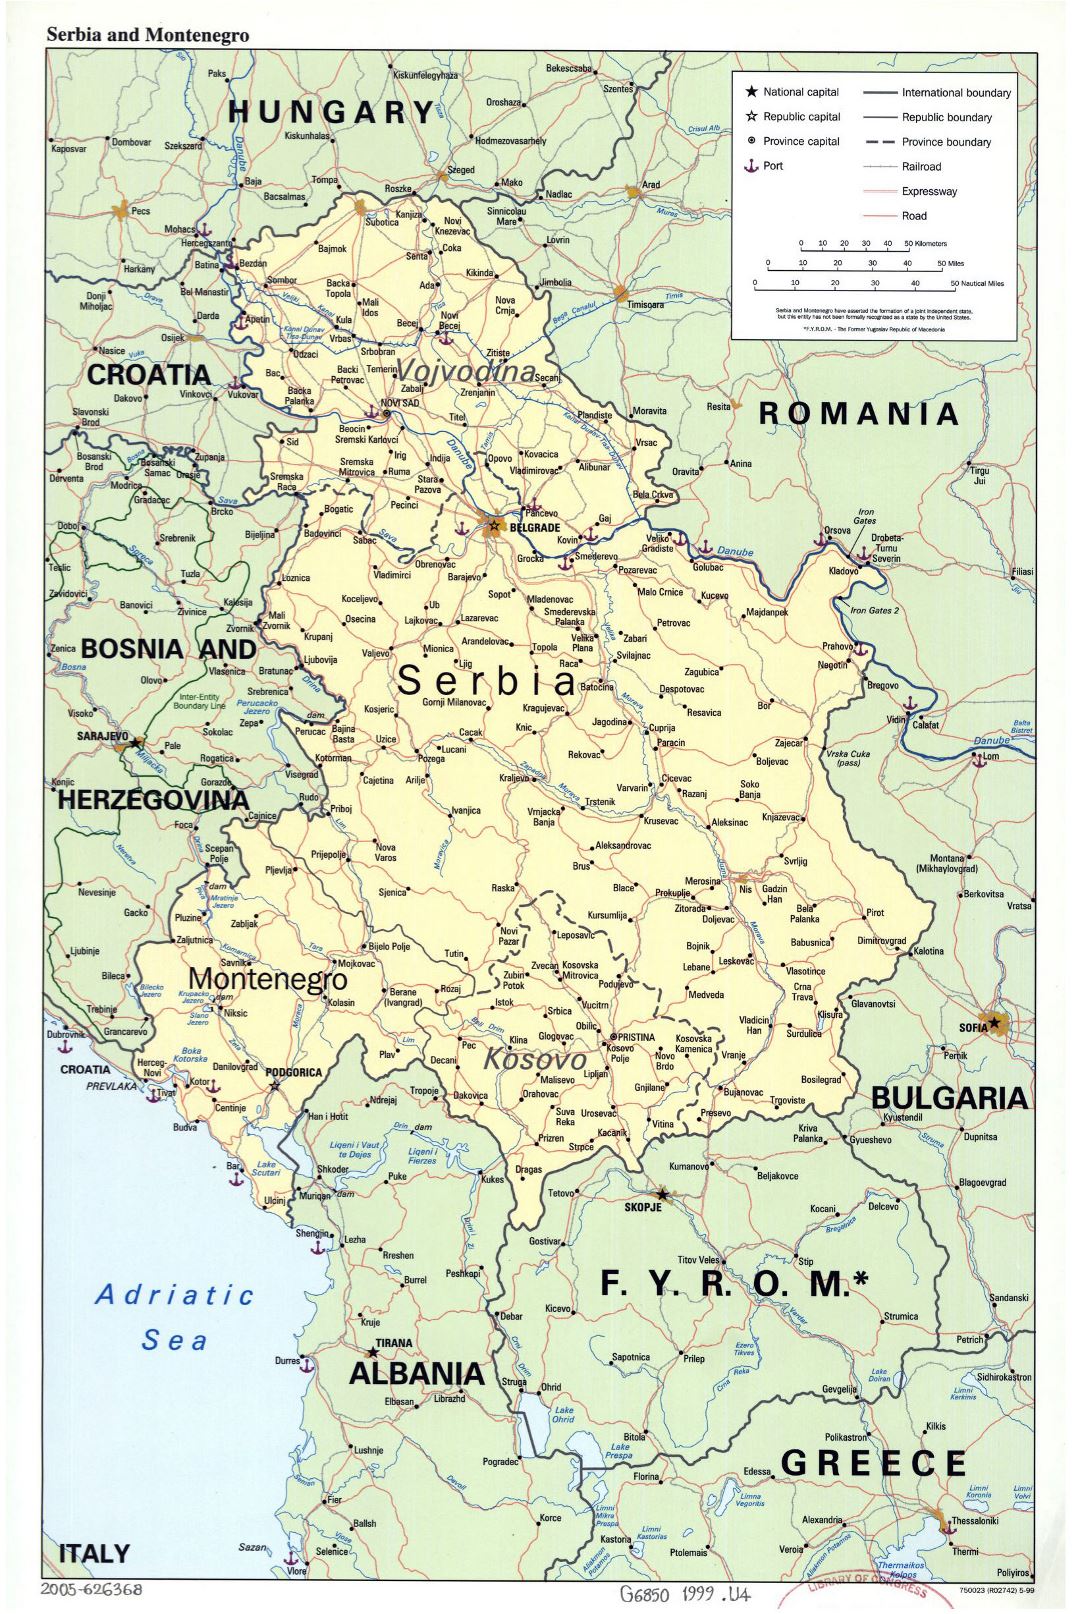 Grande mapa político de Serbia y Montenegro con carreteras, ferrocarriles, las principales ciudades y otras marcas - 1999